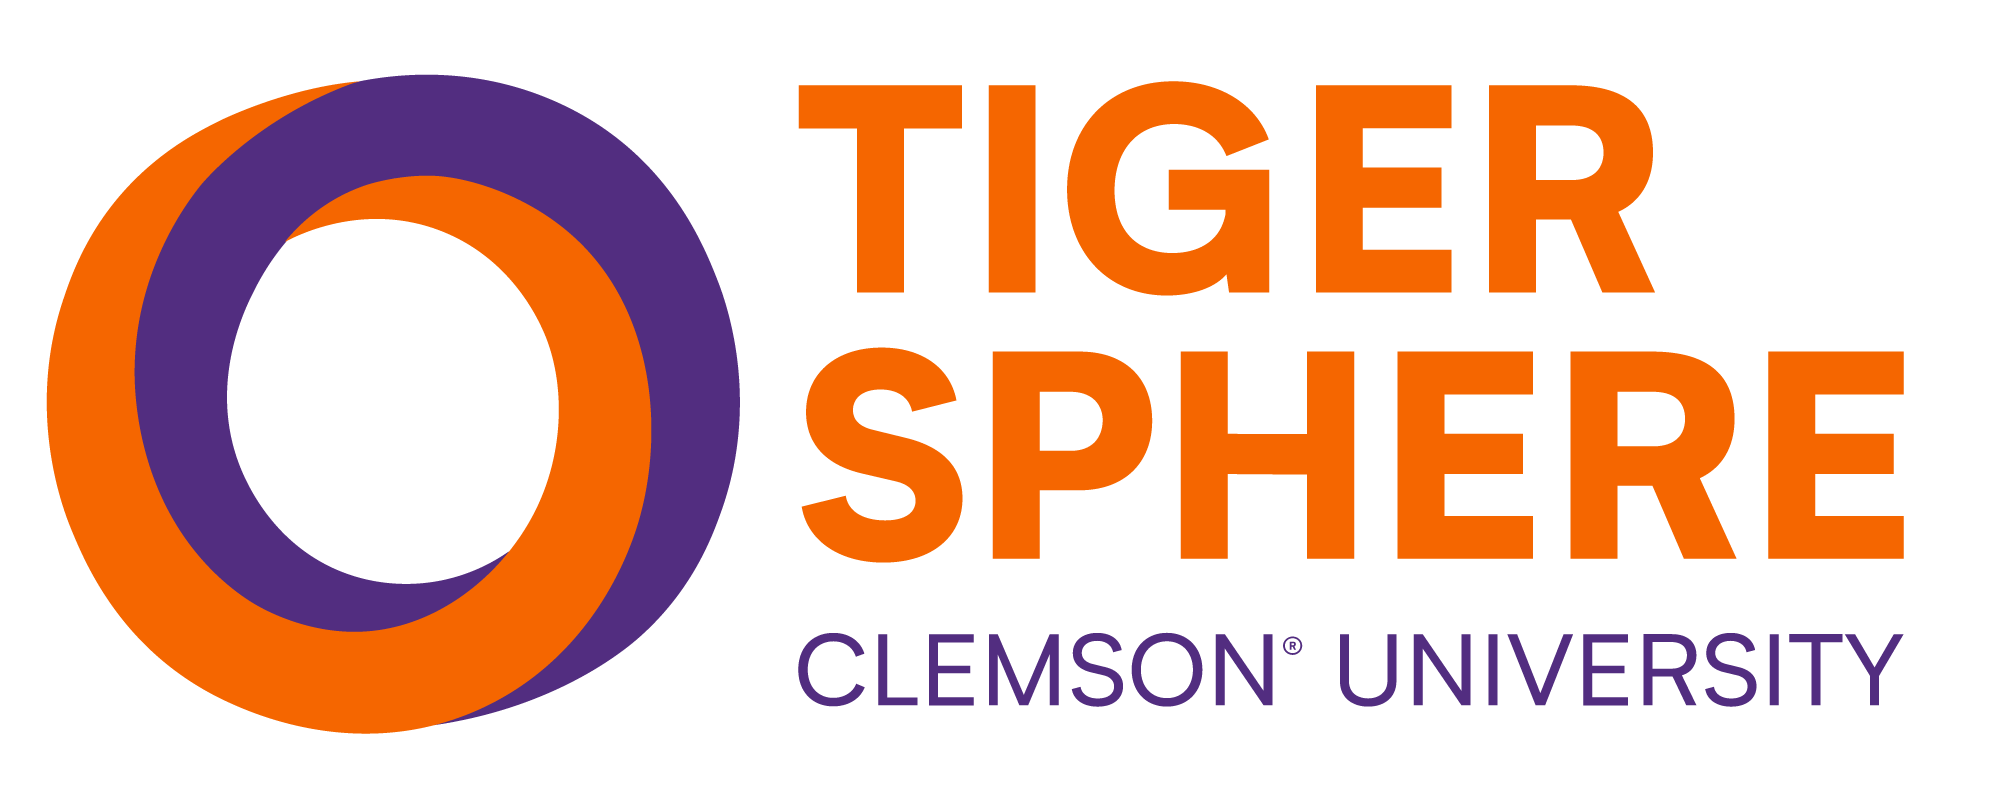 TigerSphere logo